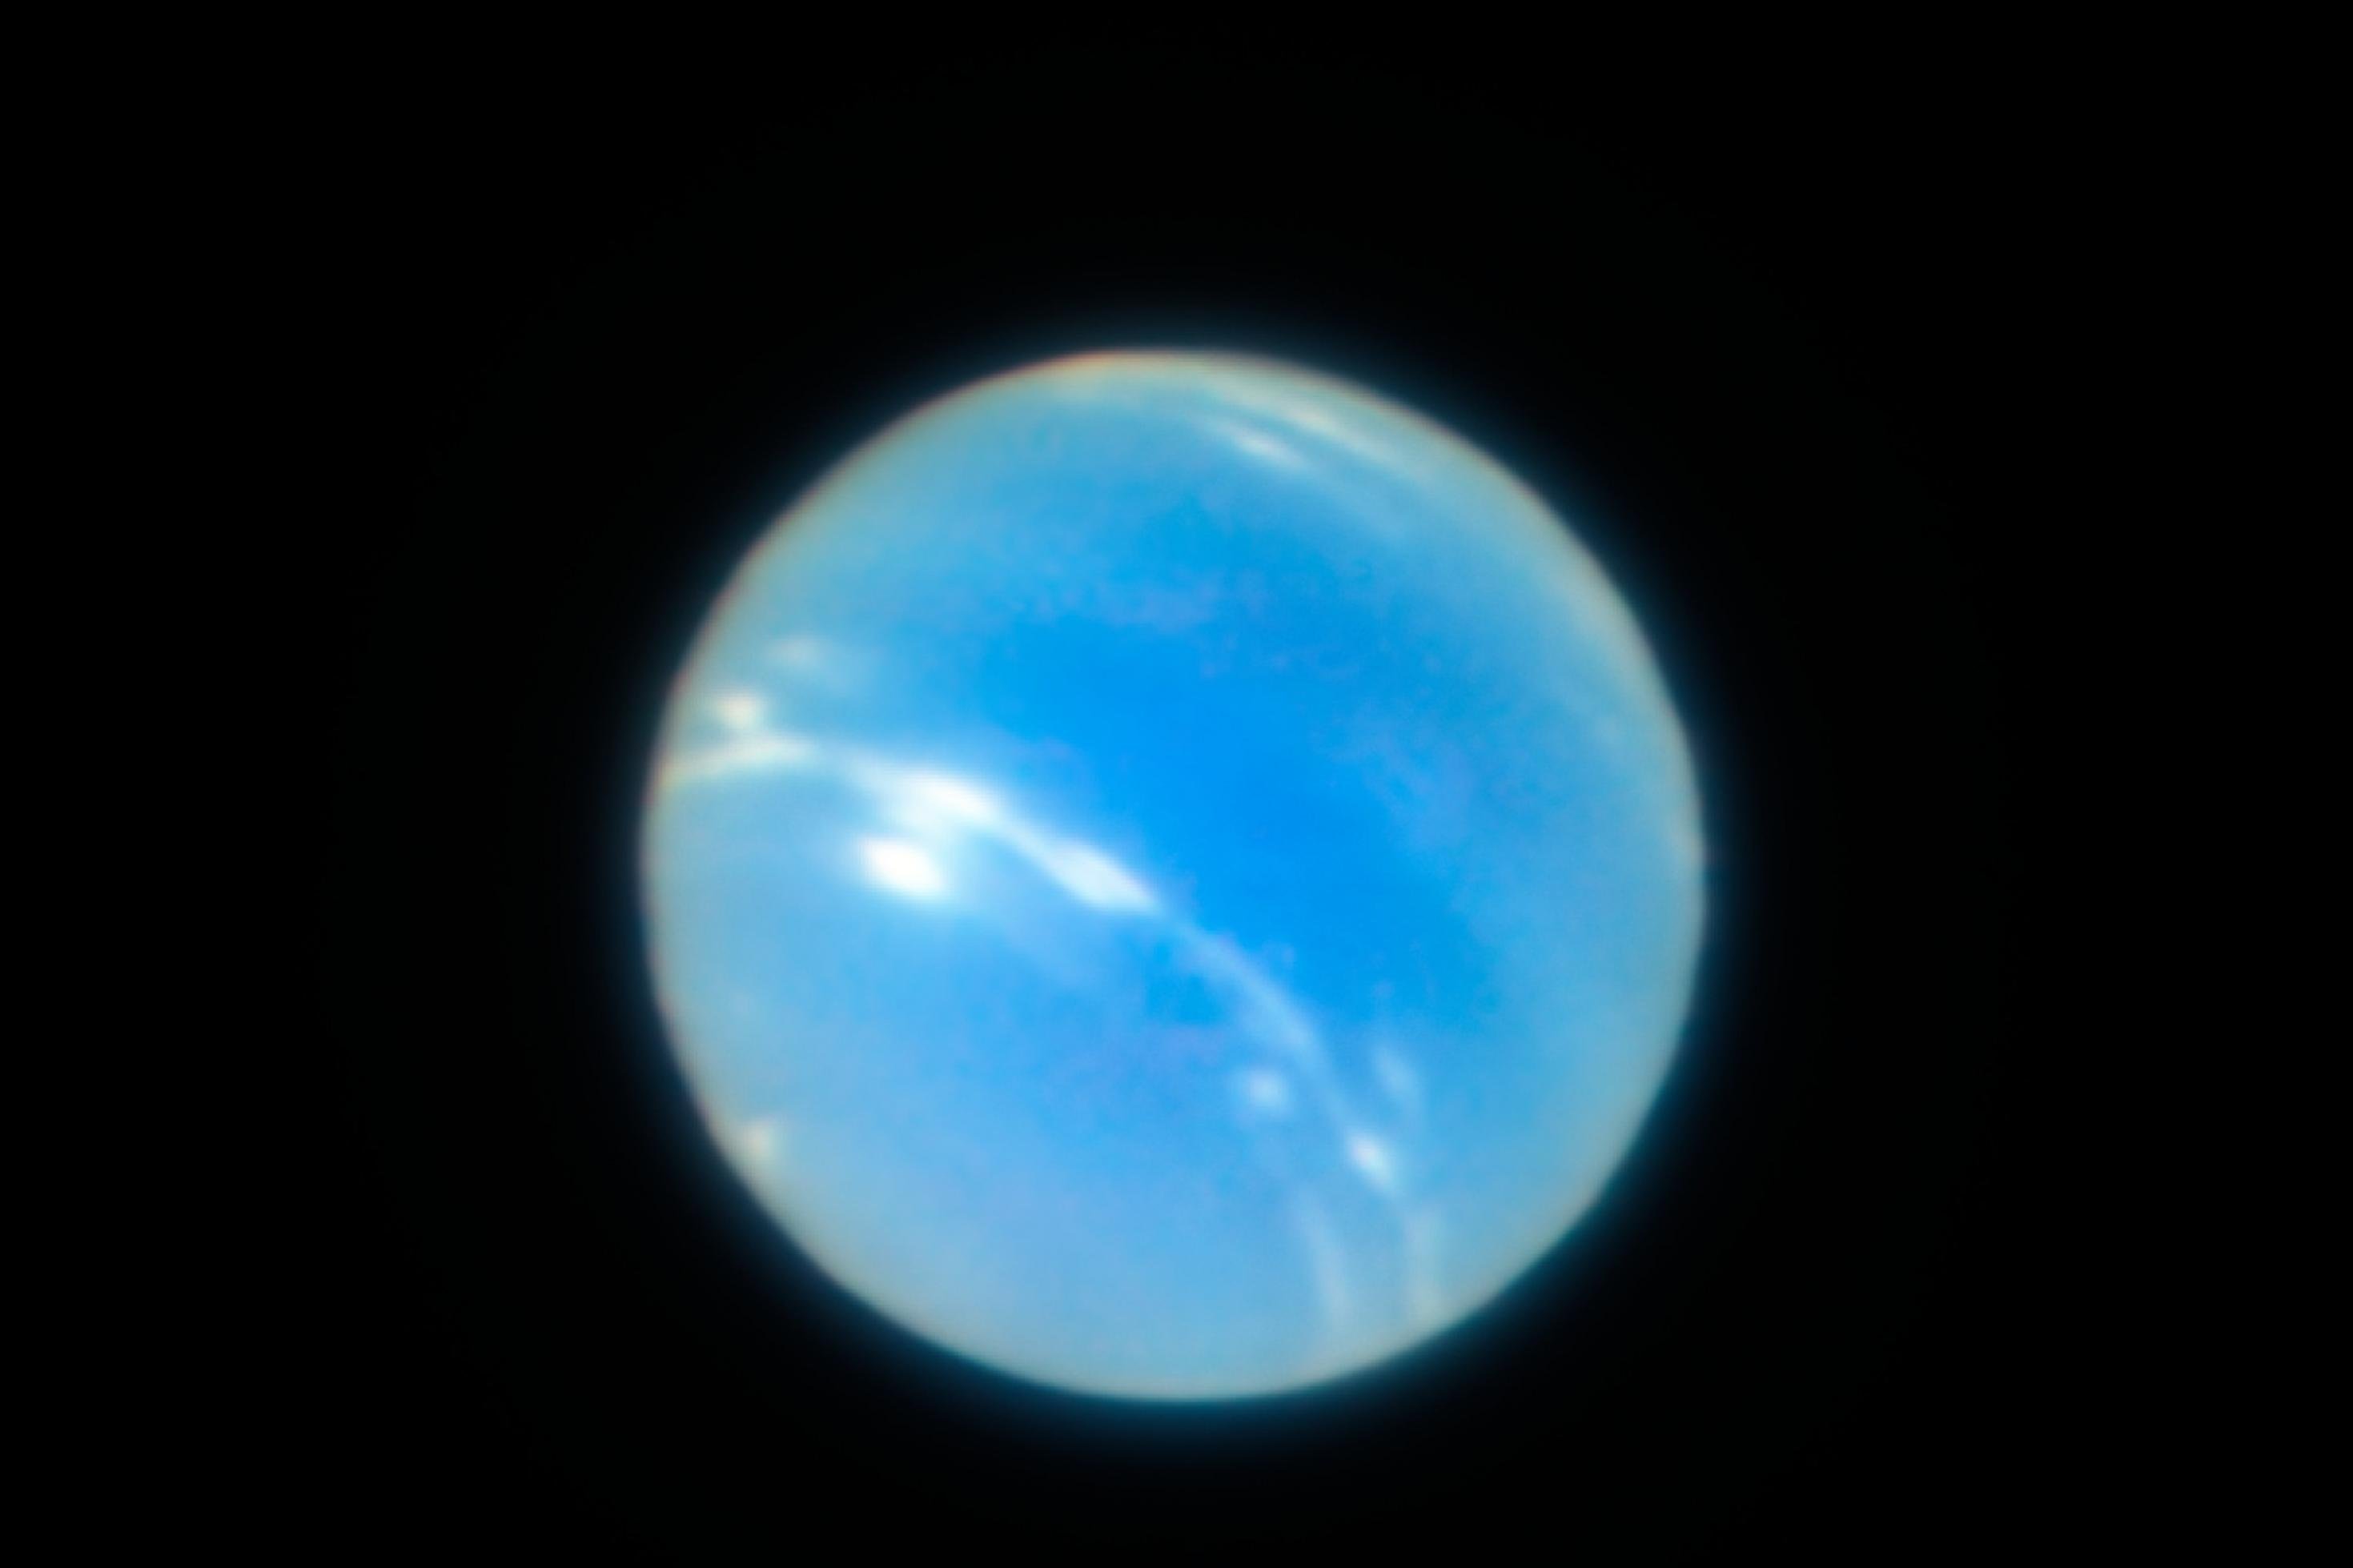 Gestochen scharfe Aufnahme des Neptuns des erdgebundenen Teleskope VLT in der Atacama-Wüste.